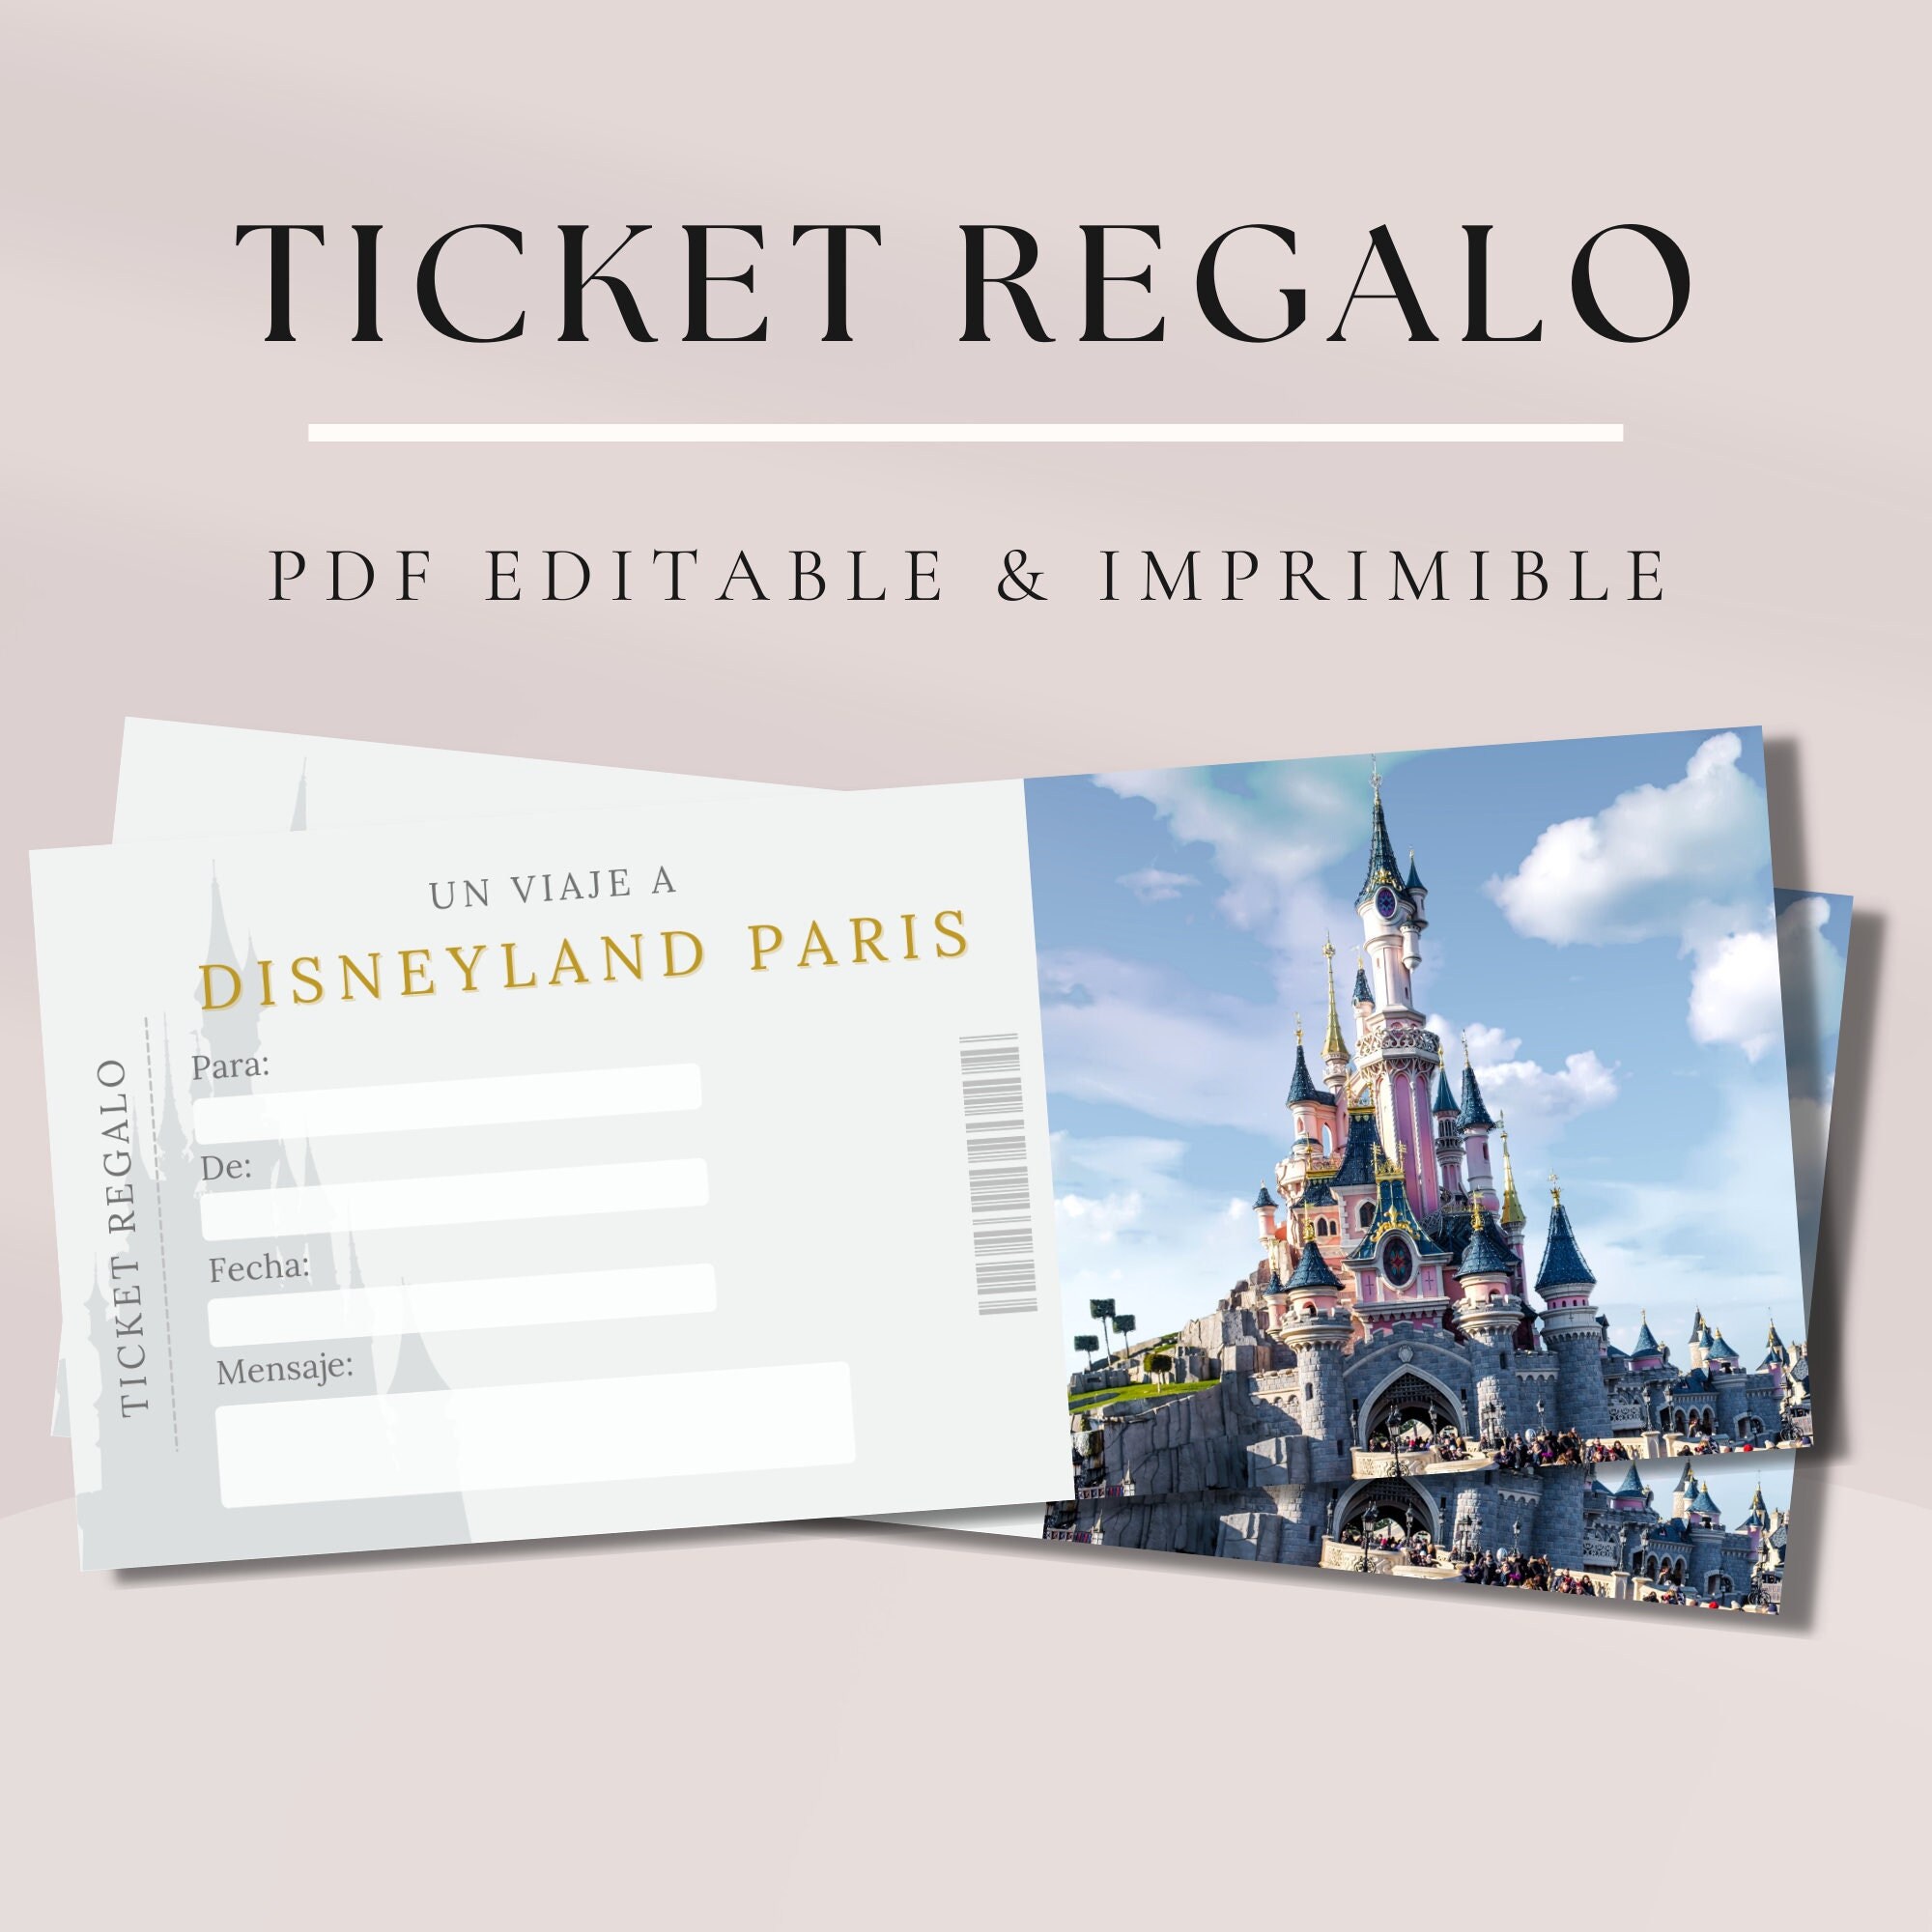 Con Penetración Palacio Ticket Regalo Imprimible Disneyland Paris. Viaje Sorpresa. - Etsy